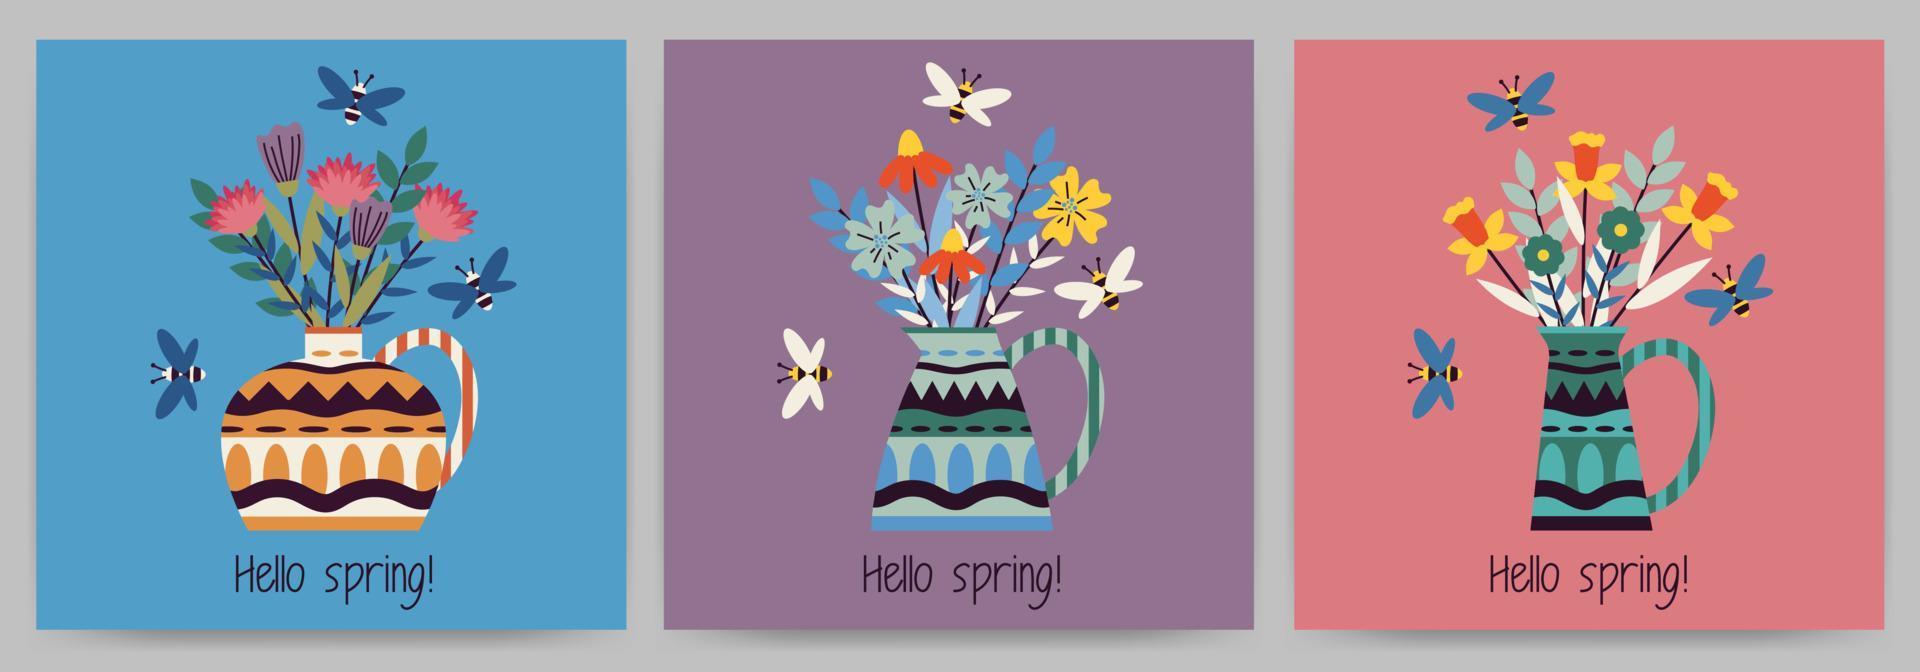 reeks van ansichtkaarten, uitnodigingen, Hallo de lente. plein Sjablonen met bloemen in een vaas, bijen en tekst. vector illustratie Aan een gekleurde achtergrond.